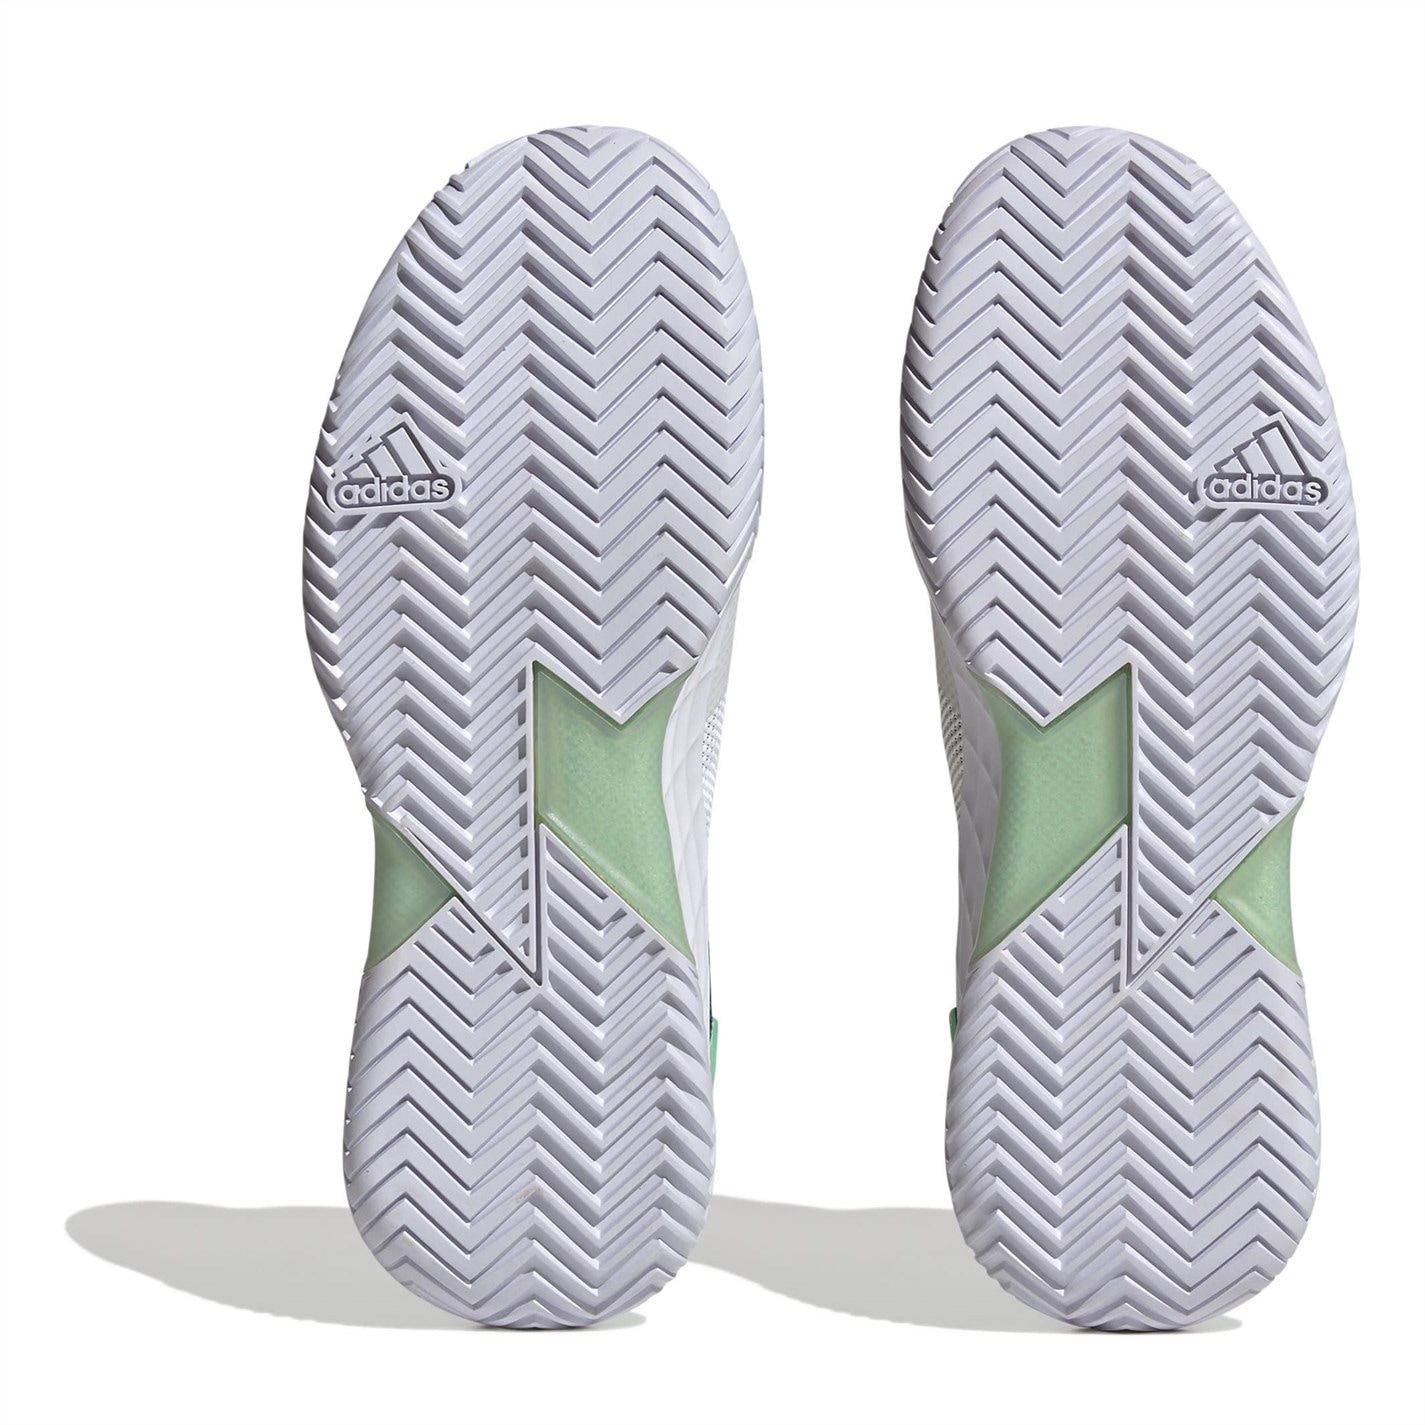 adidas Womens Adizero Ubersonic 4 Tennis Shoes in White